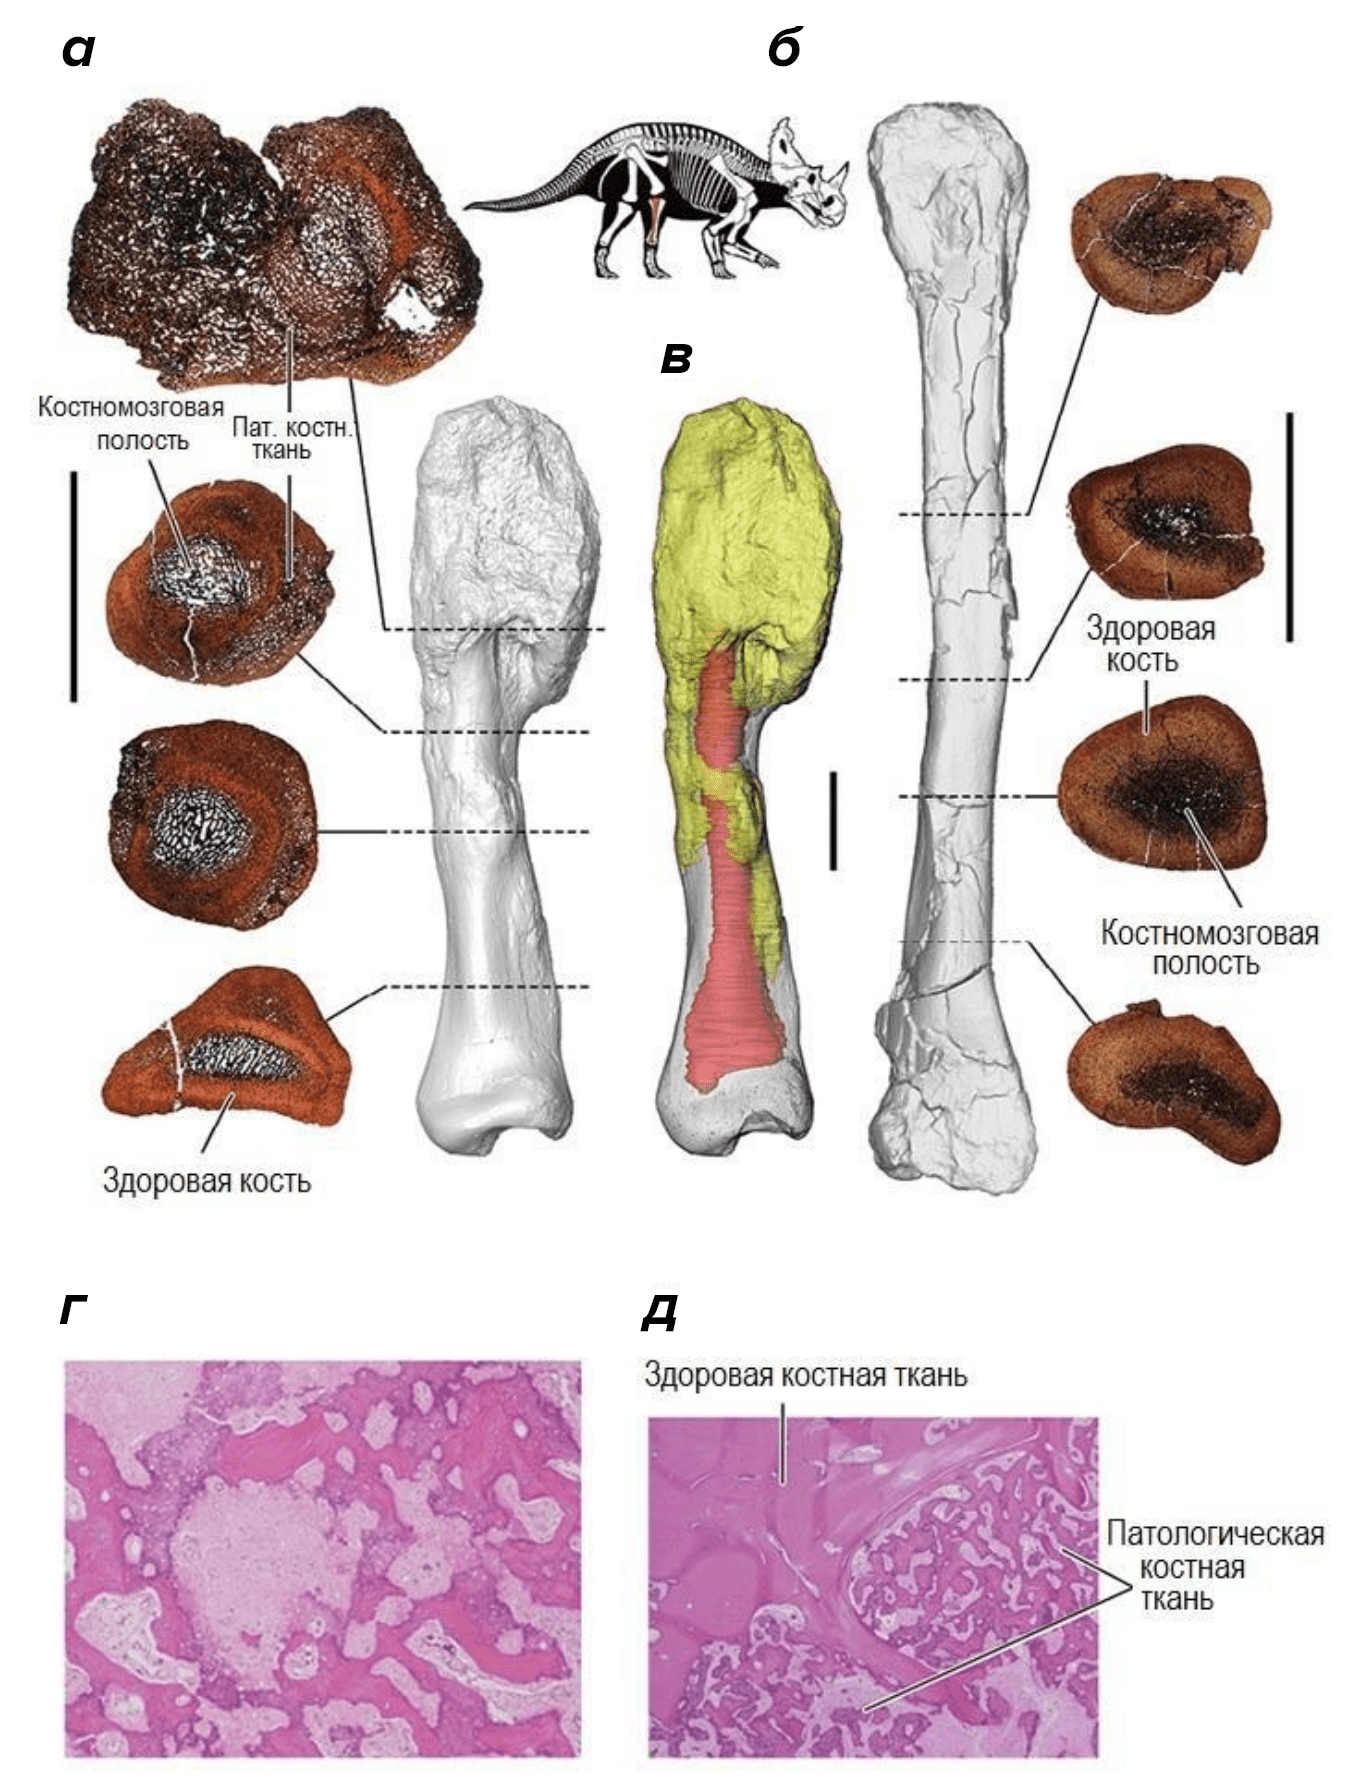 Гистологический анализ остеосаркомы у центрозавров и человека